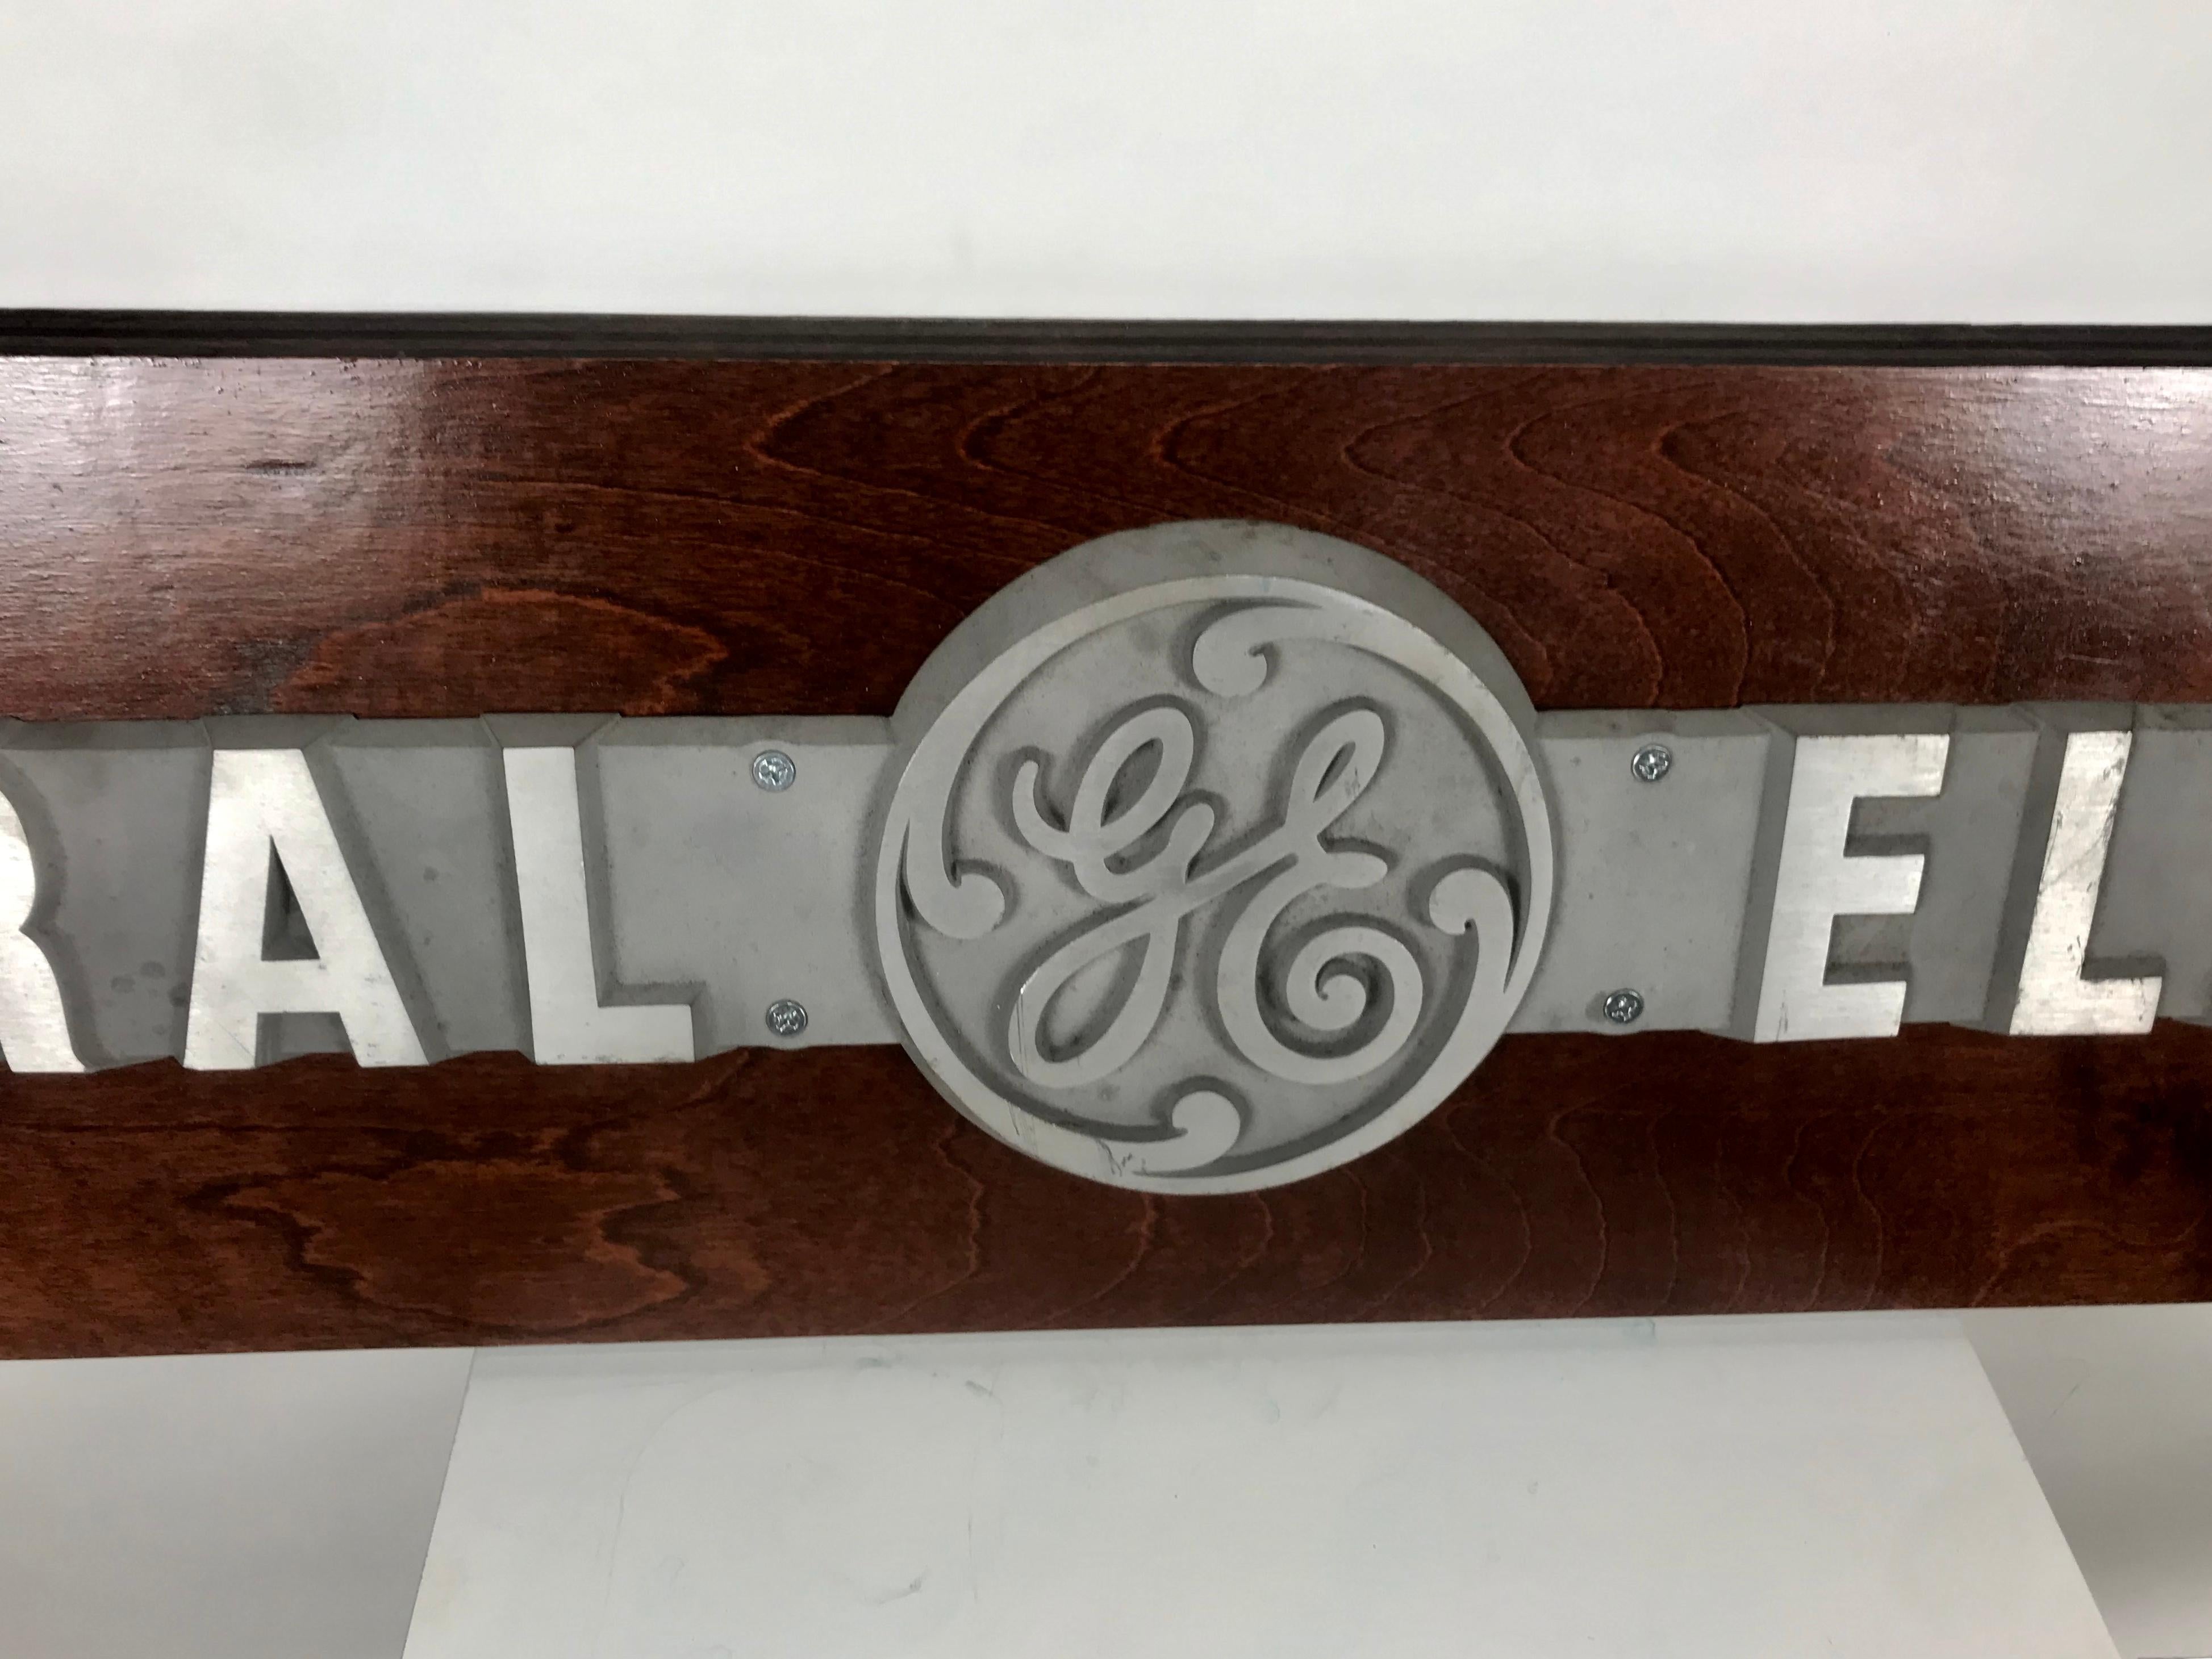 1950er Jahre Aluminium auf Holz General Electric-Logo, Schildtafel. Aus dem Büro von General Electric in Buffalo, NY, geborgene, beeindruckende Originalplakette aus Aluminiumguss mit dem berühmten G E-Logo, auf Holz montiert.